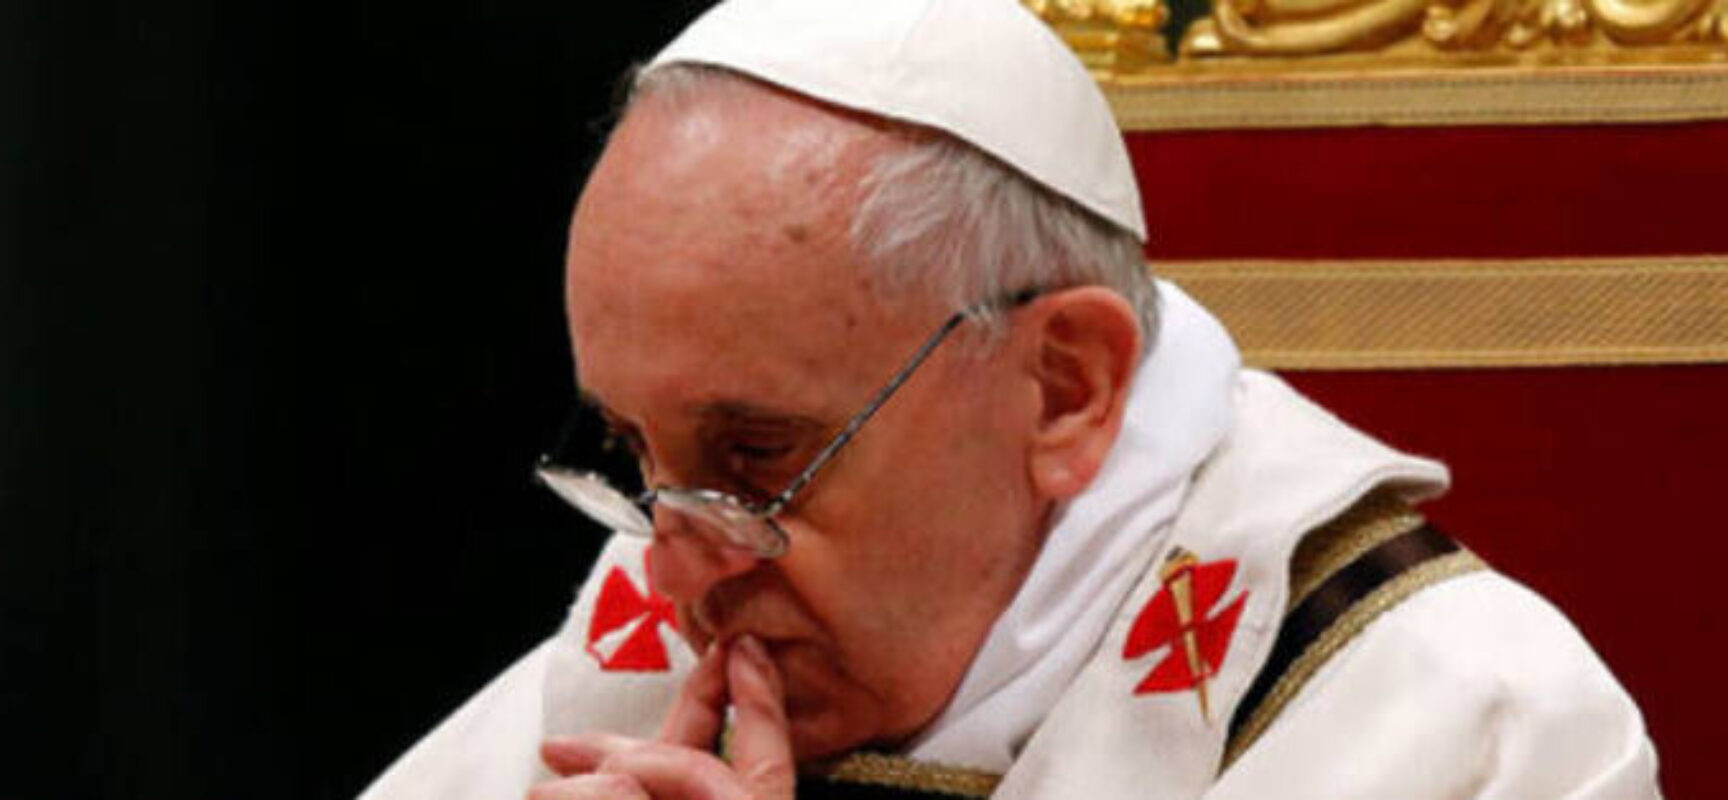 Papa Francisco diz que a guerra é inimiga do diálogo universal